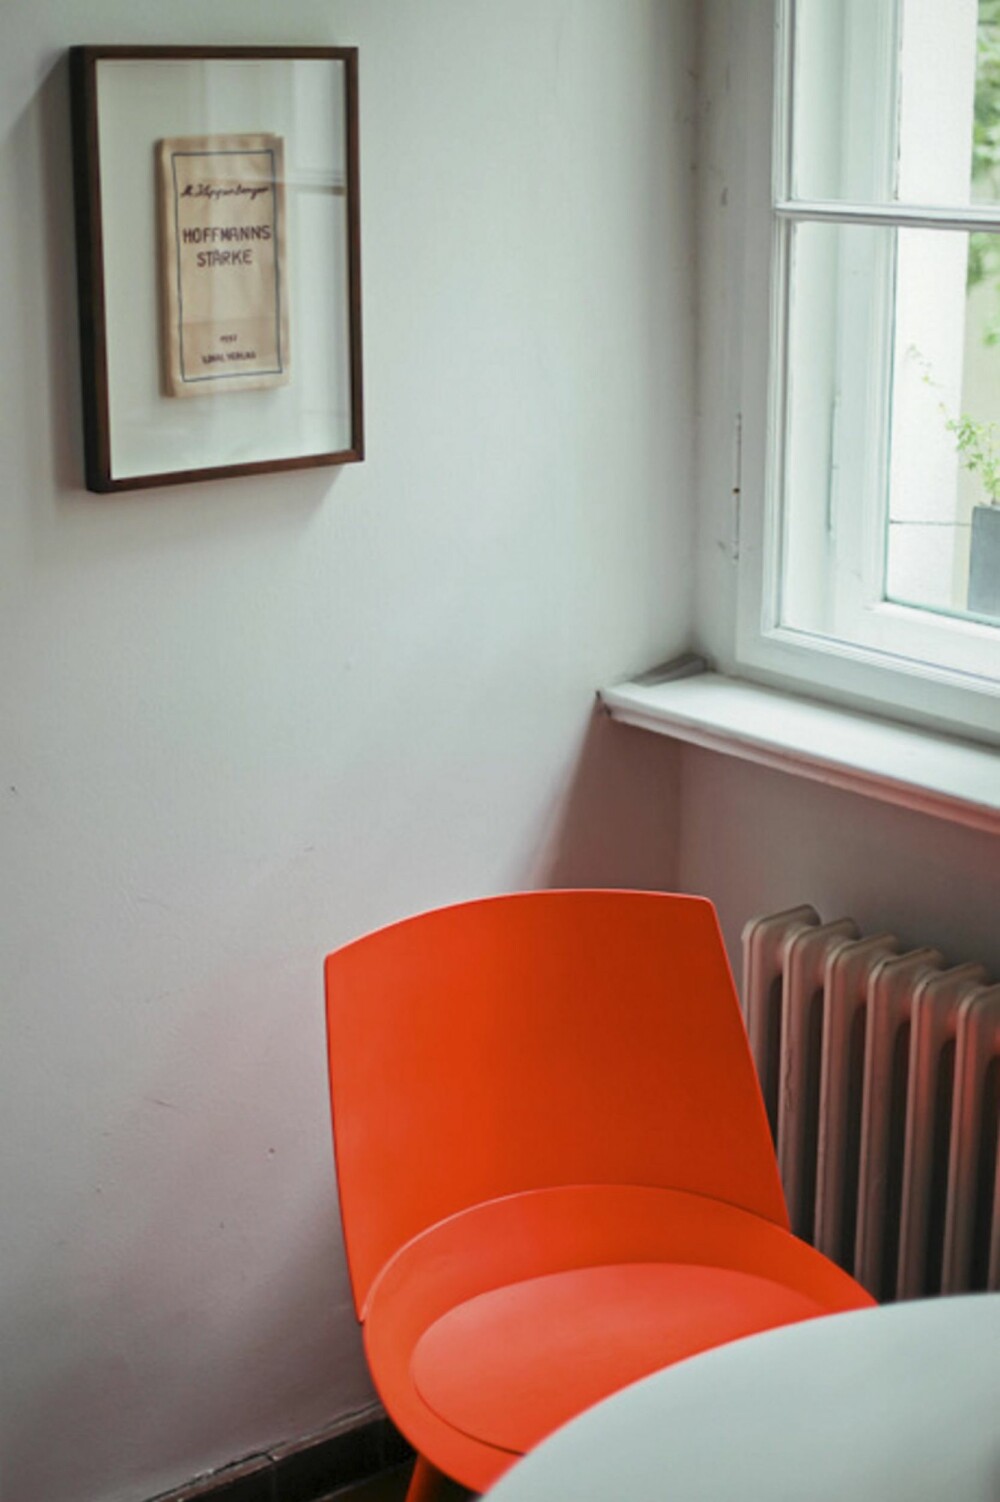 FARGEKLATT: Den oransje stolen er en skikkelig fargeklatt  i det lyse rommet.